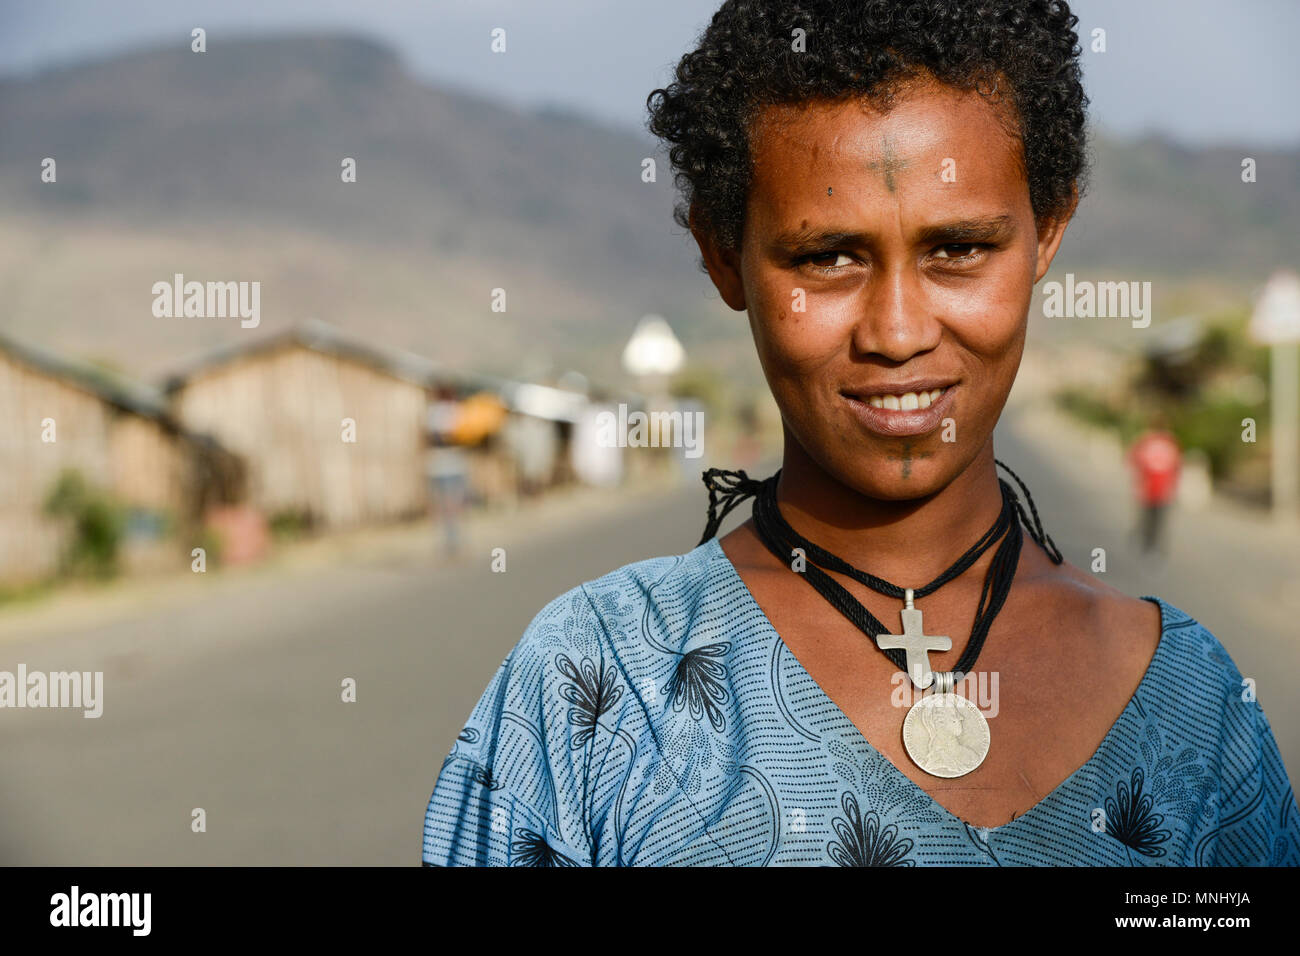 Äthiopien, Amhara, Dorf in der Nähe von Gondar, Amharisch orthodoxe  christliche Frau mit tätowierten Kreuz auf der Stirn und Kreuz Halskette /  AETHIOPIEN, Amhara, Gonder, orthodoxe Christin mit taetowiertem Kreuz auf  der